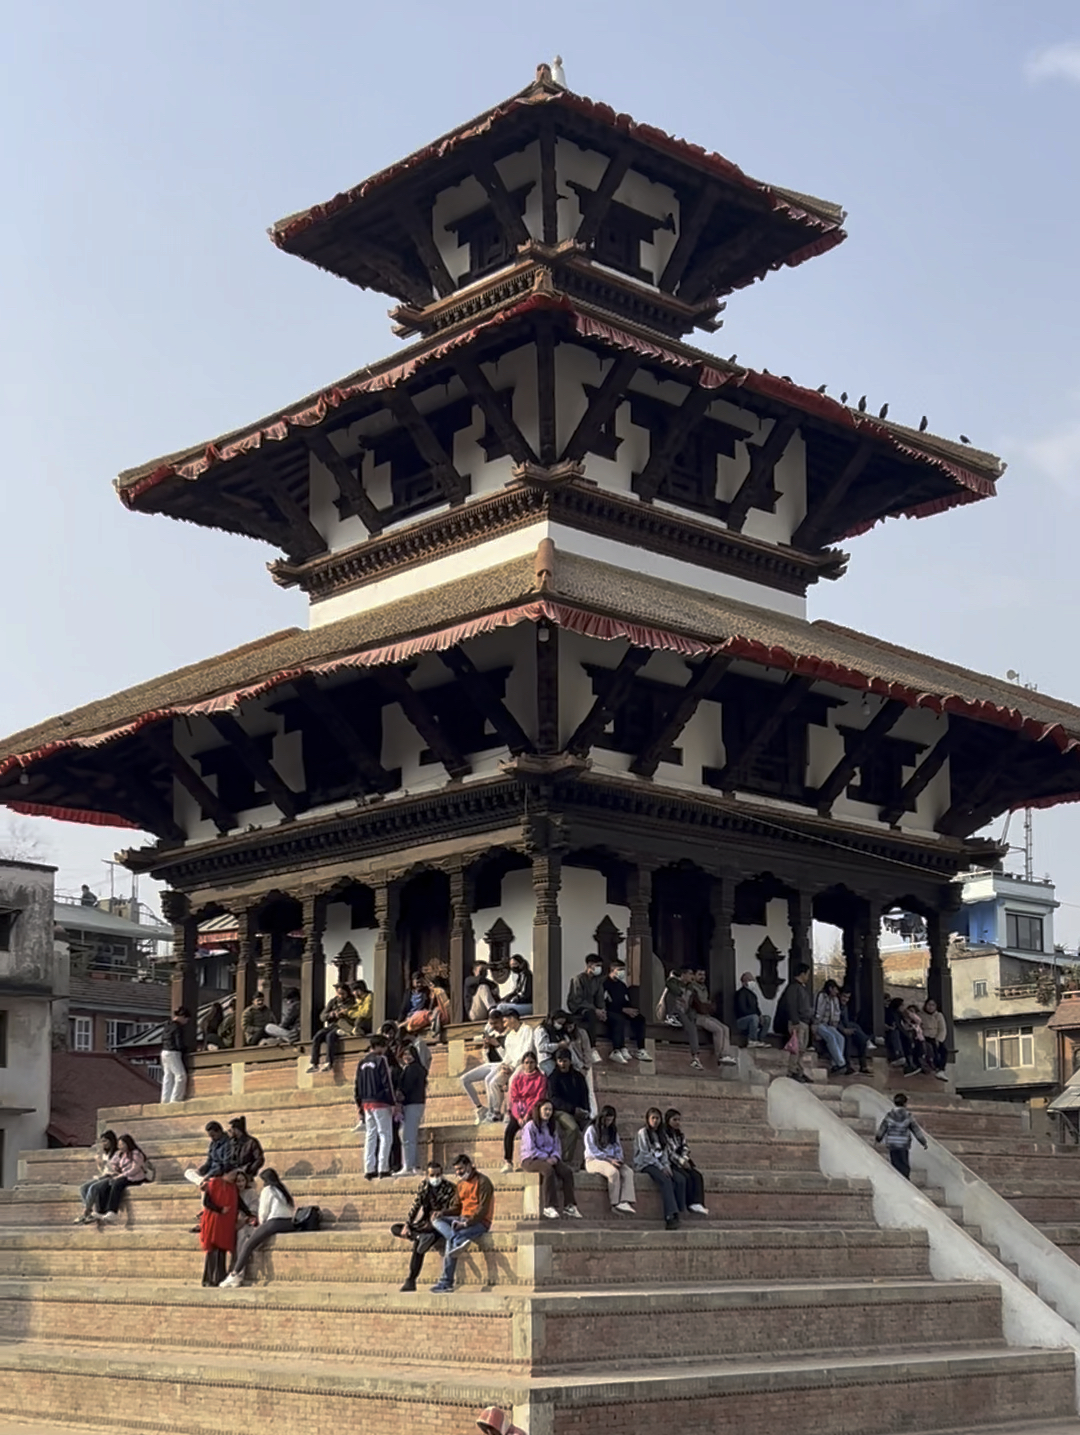 尼泊尔一个寺庙比房子多的国度。加德满都杜巴广场，鸽子与人和谐共处；到了此地，内心是如此平静…